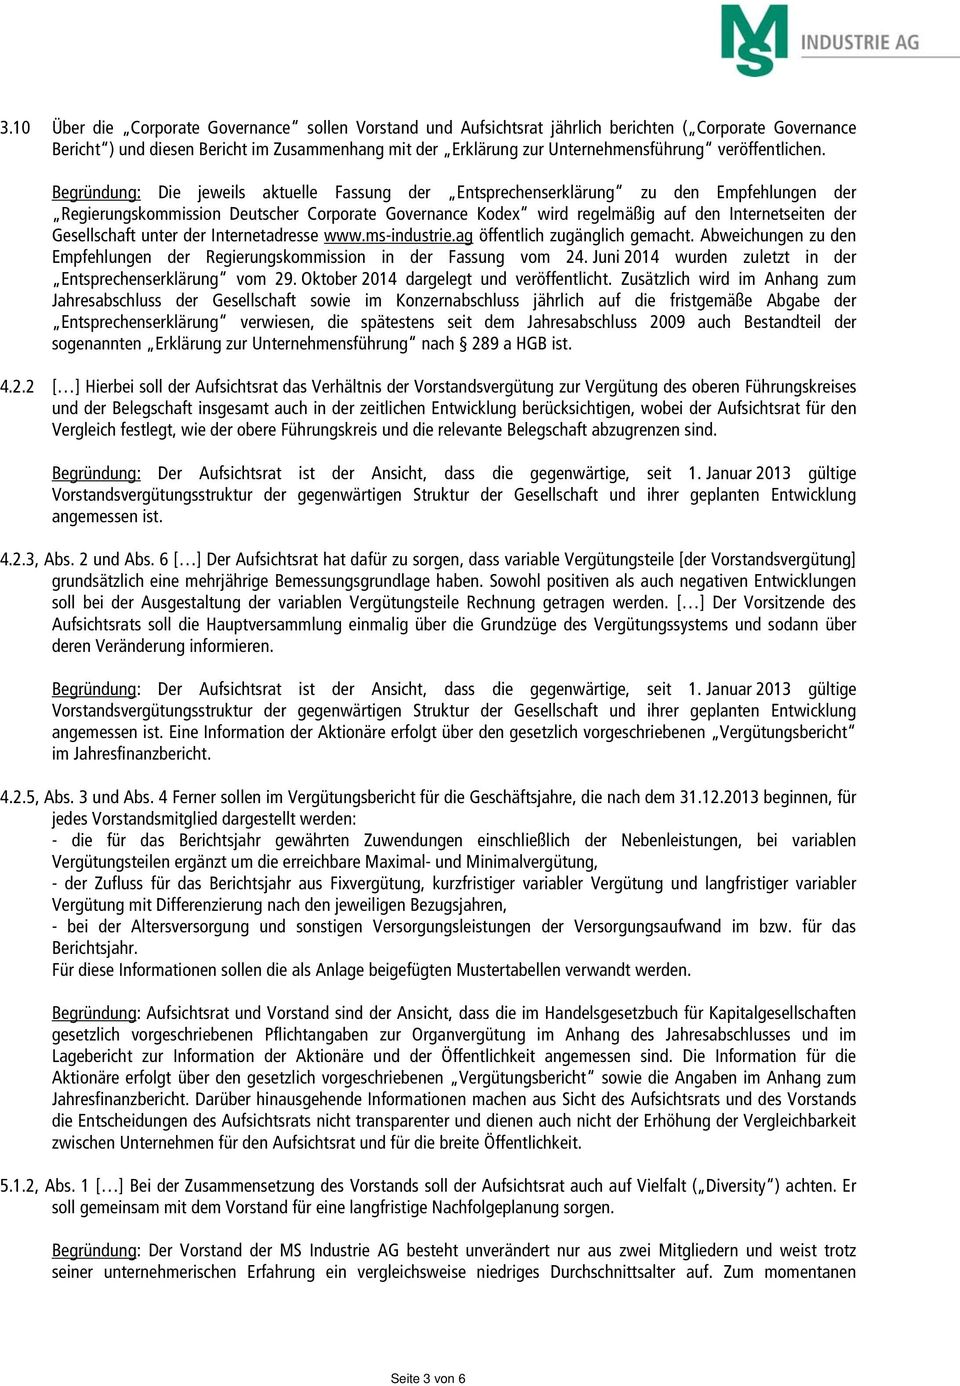 Begründung: Die jeweils aktuelle Fassung der Entsprechenserklärung zu den Empfehlungen der Regierungskommission Deutscher Corporate Governance Kodex wird regelmäßig auf den Internetseiten der